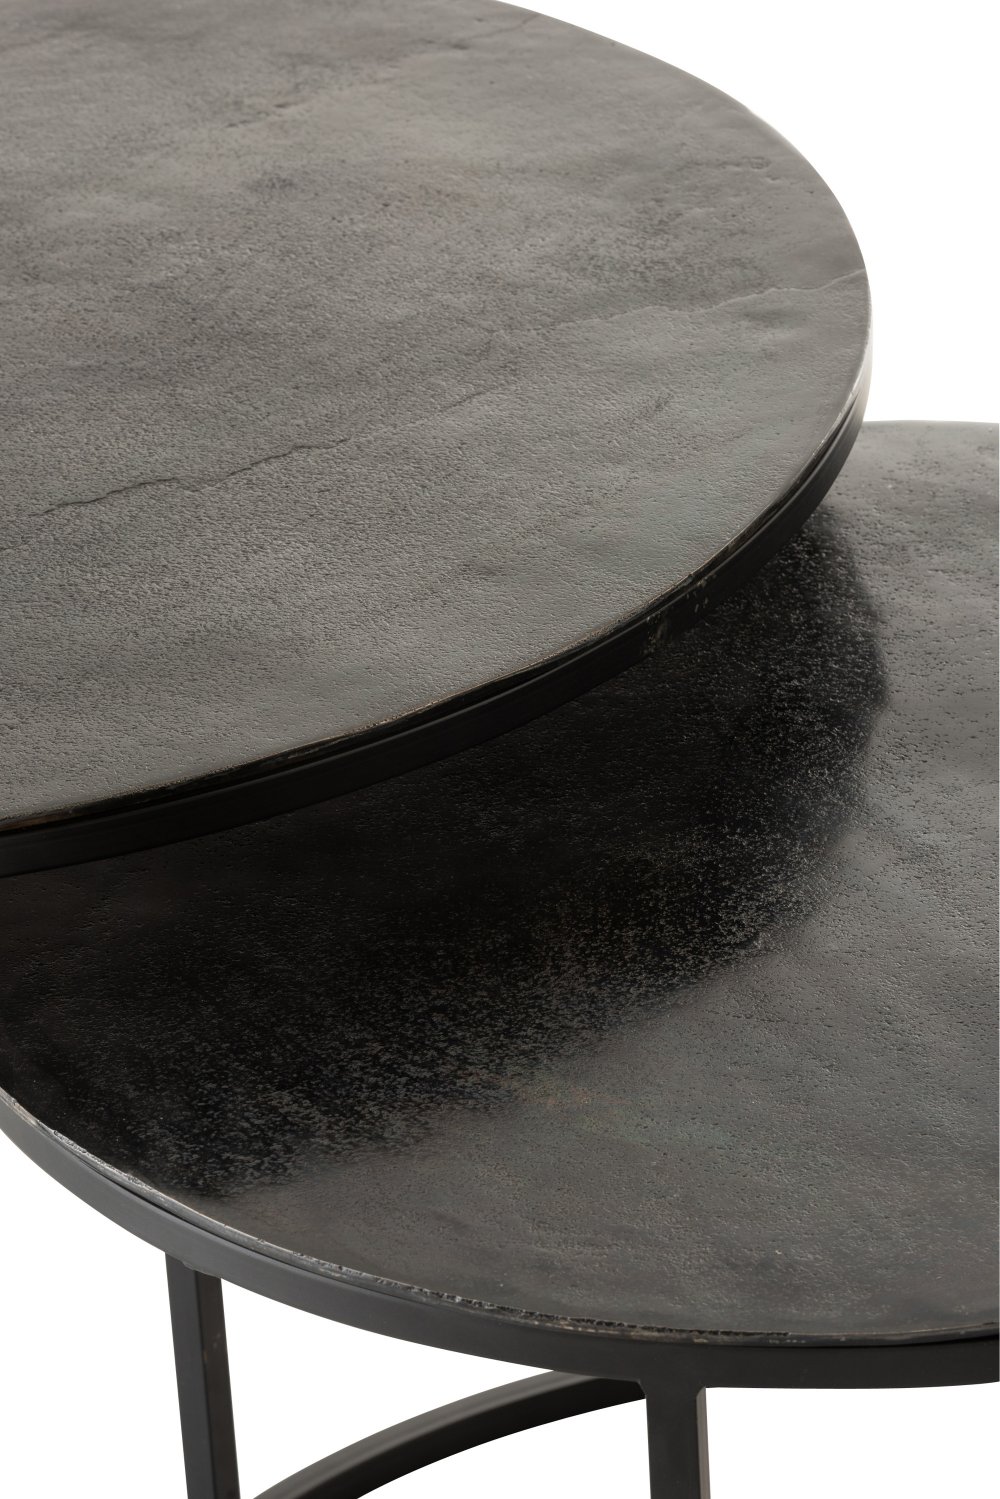 Set de 3 tables gigognes ronde NIZI en métal noir et aluminium noir/ vert.